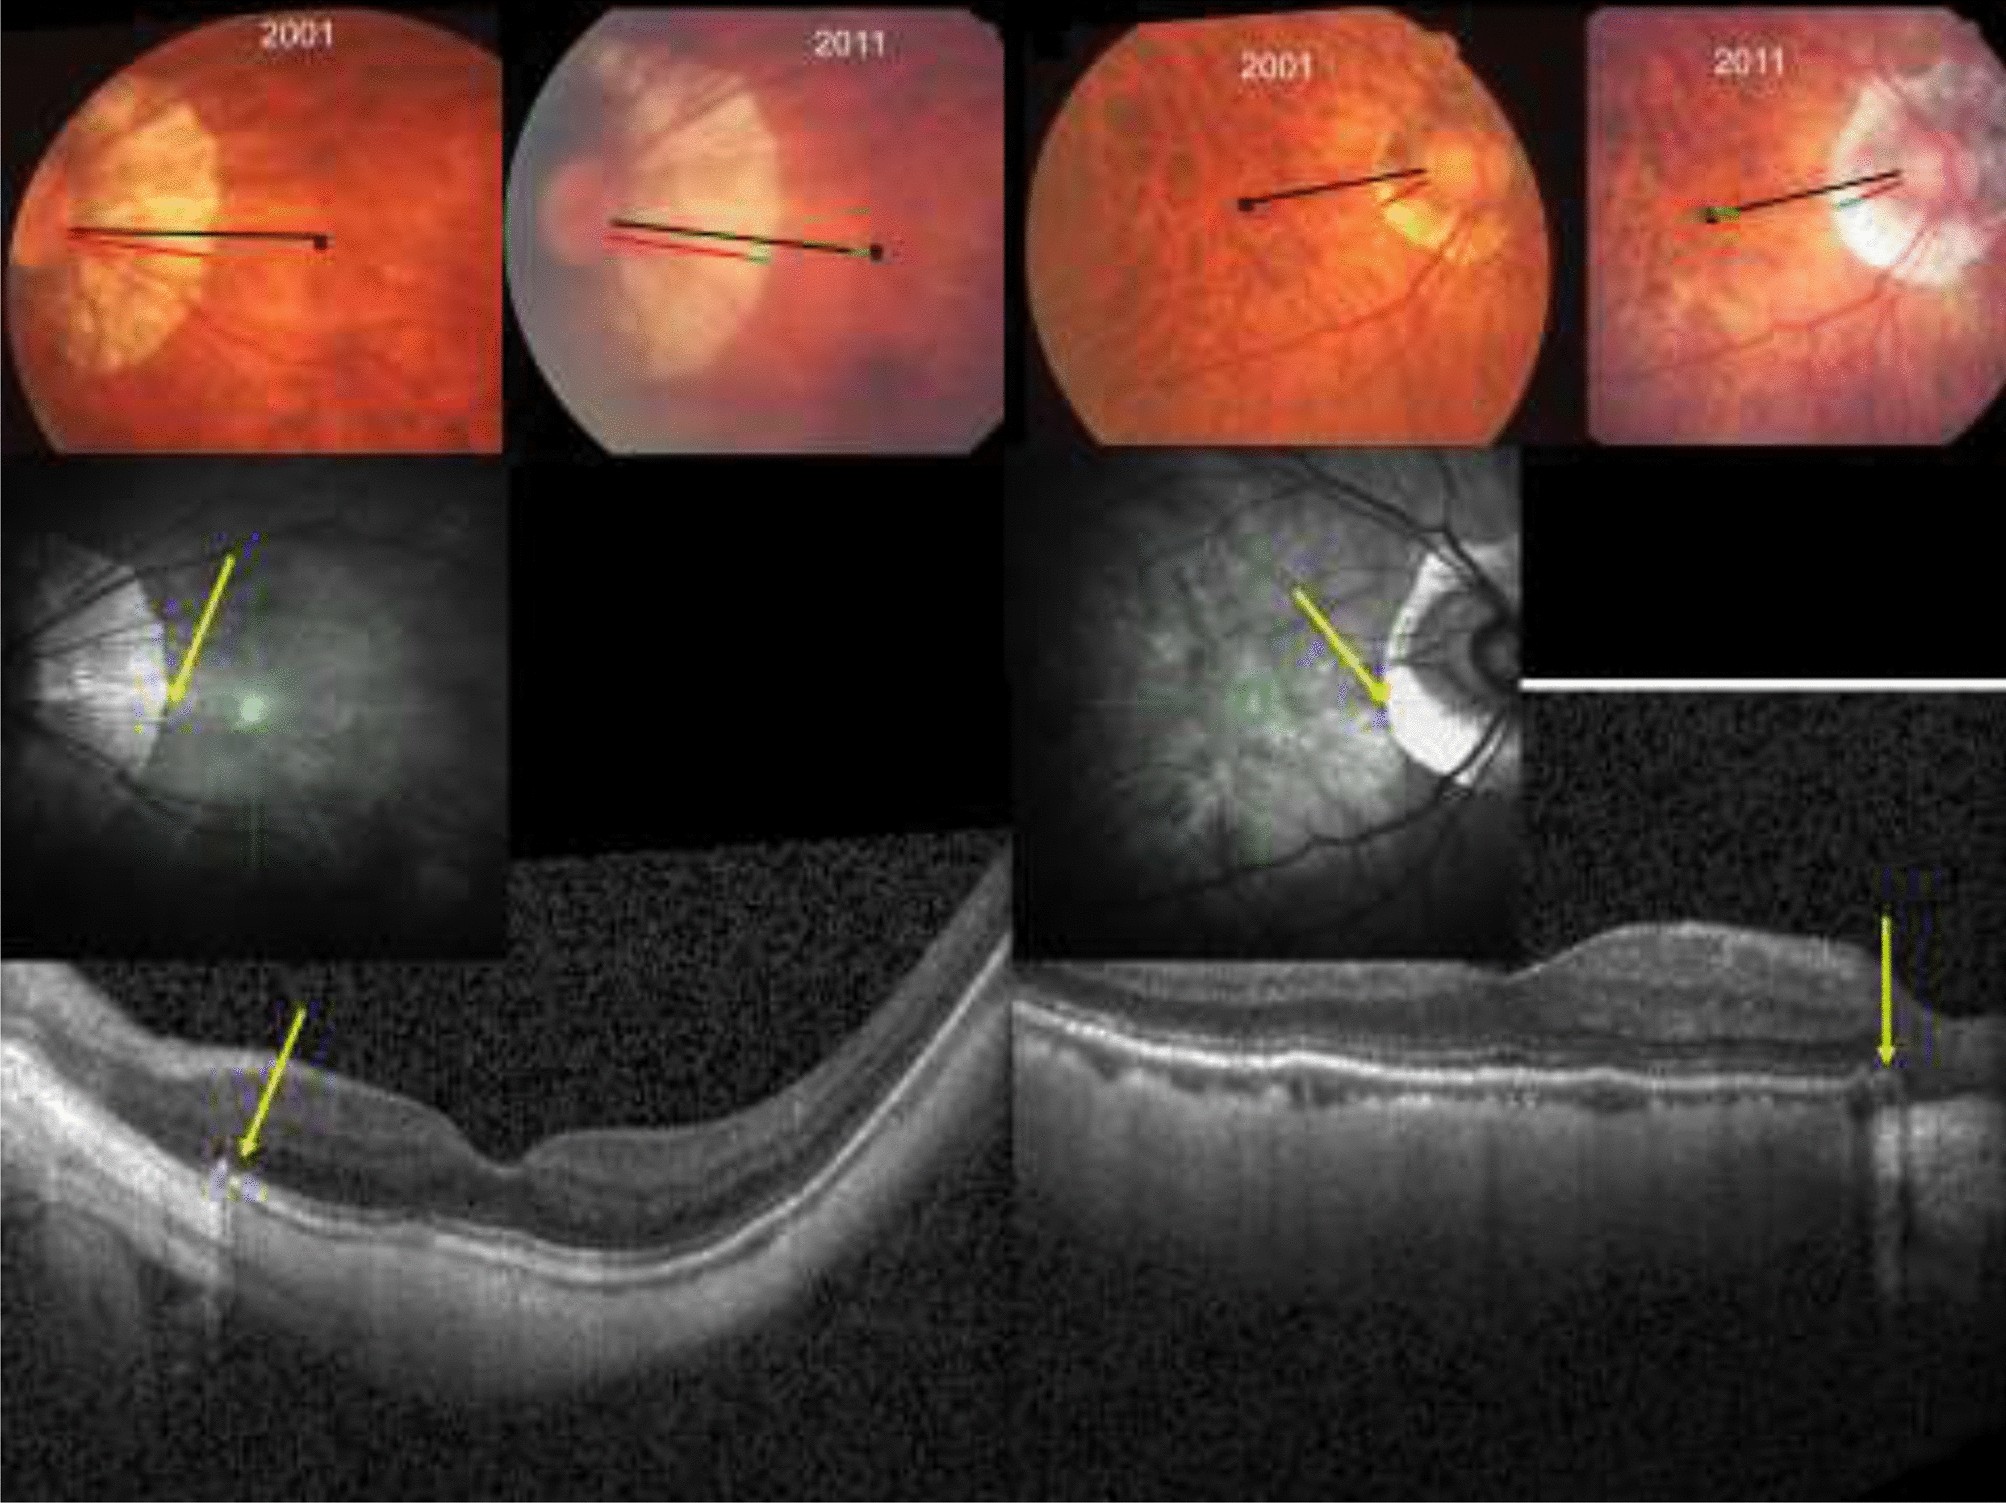 myopia retinal deformation